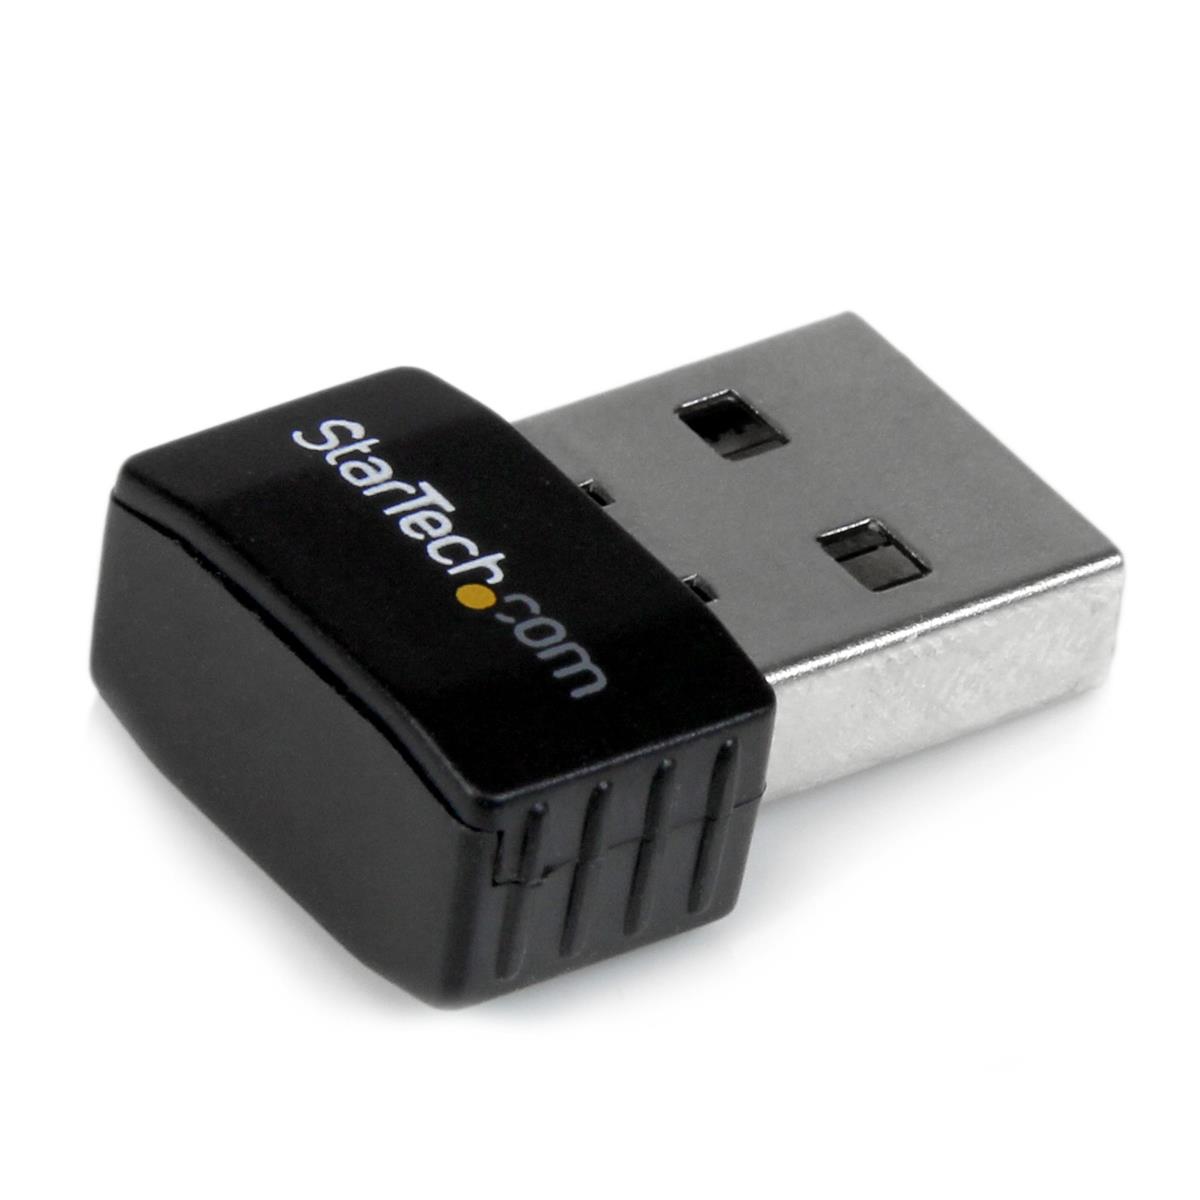 Photos - Network Card Startech.com StarTech USB 2.0 300Mbps Mini Wireless-N Network Adapter USB300WN2X2C 